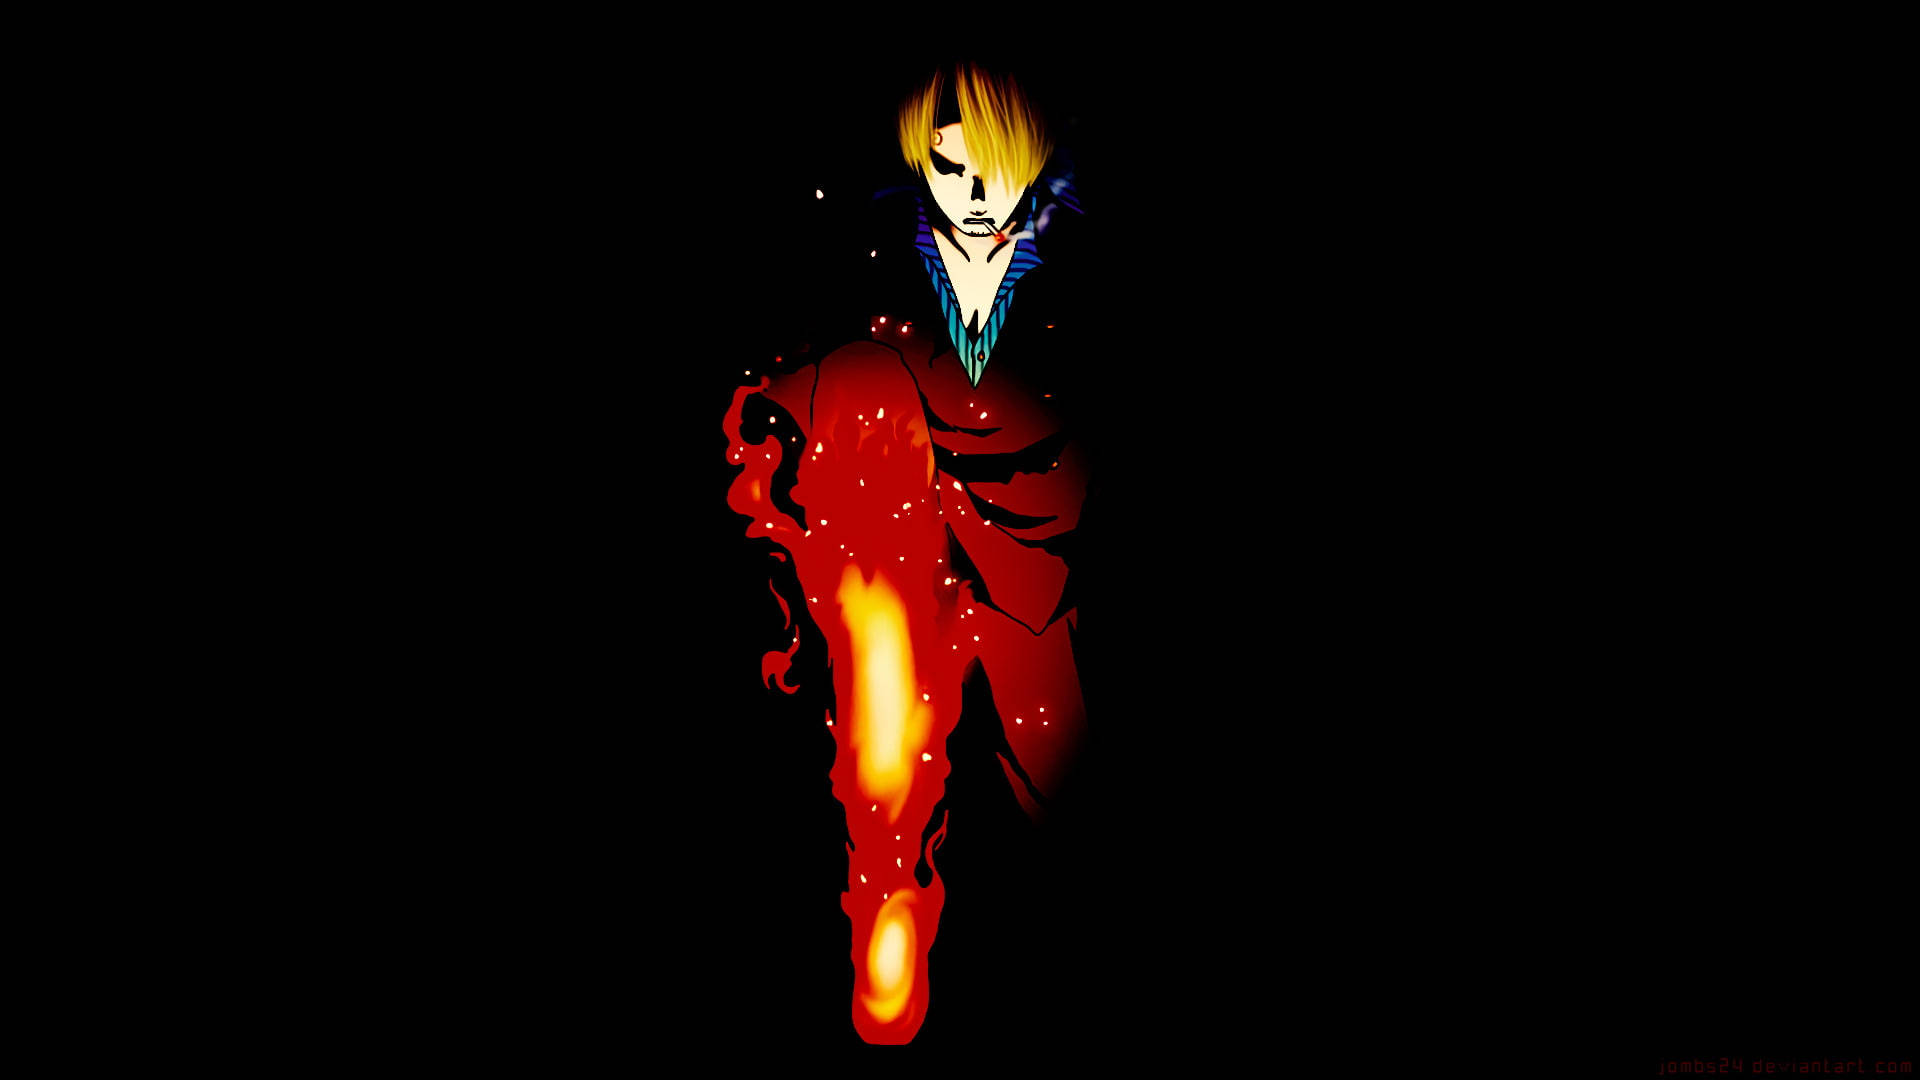 Sanji leverer et kraftfuldt djævlens spark i mørket. Wallpaper